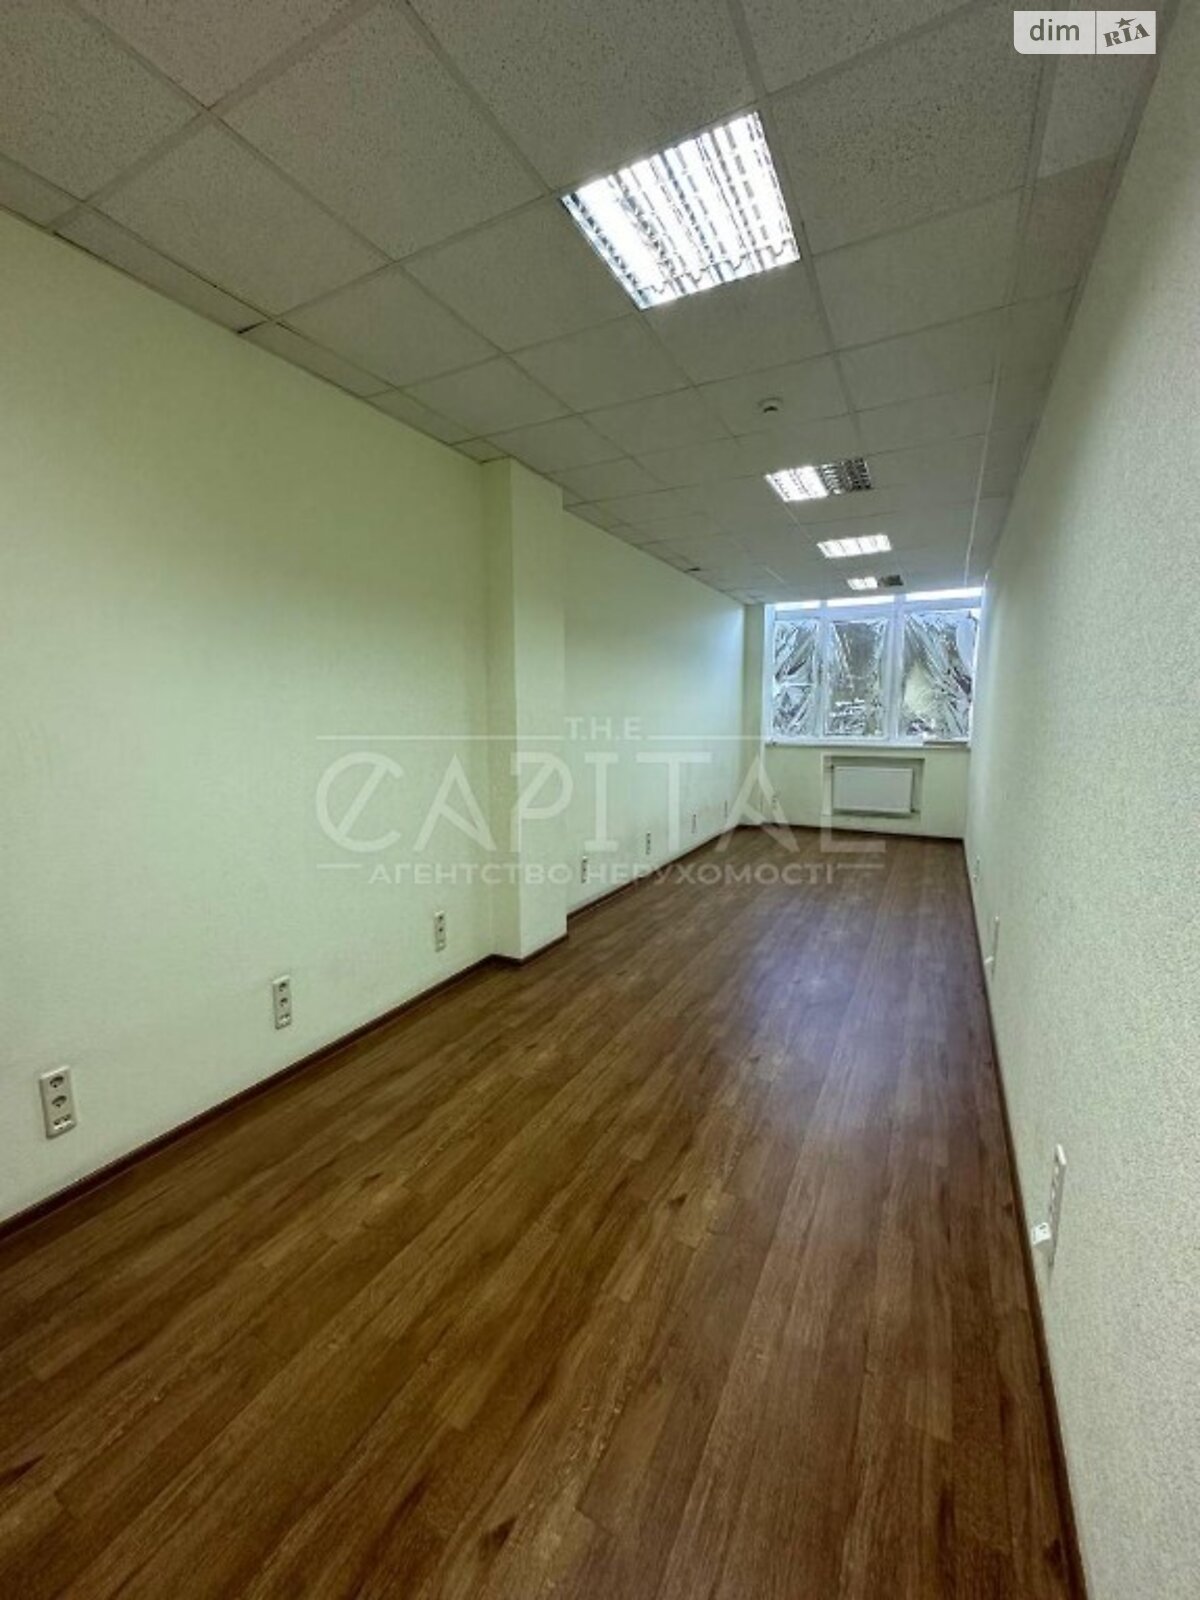 Аренда офисного помещения в Киеве, Кирилловская улица 40, помещений - 6, этаж - 3 фото 1